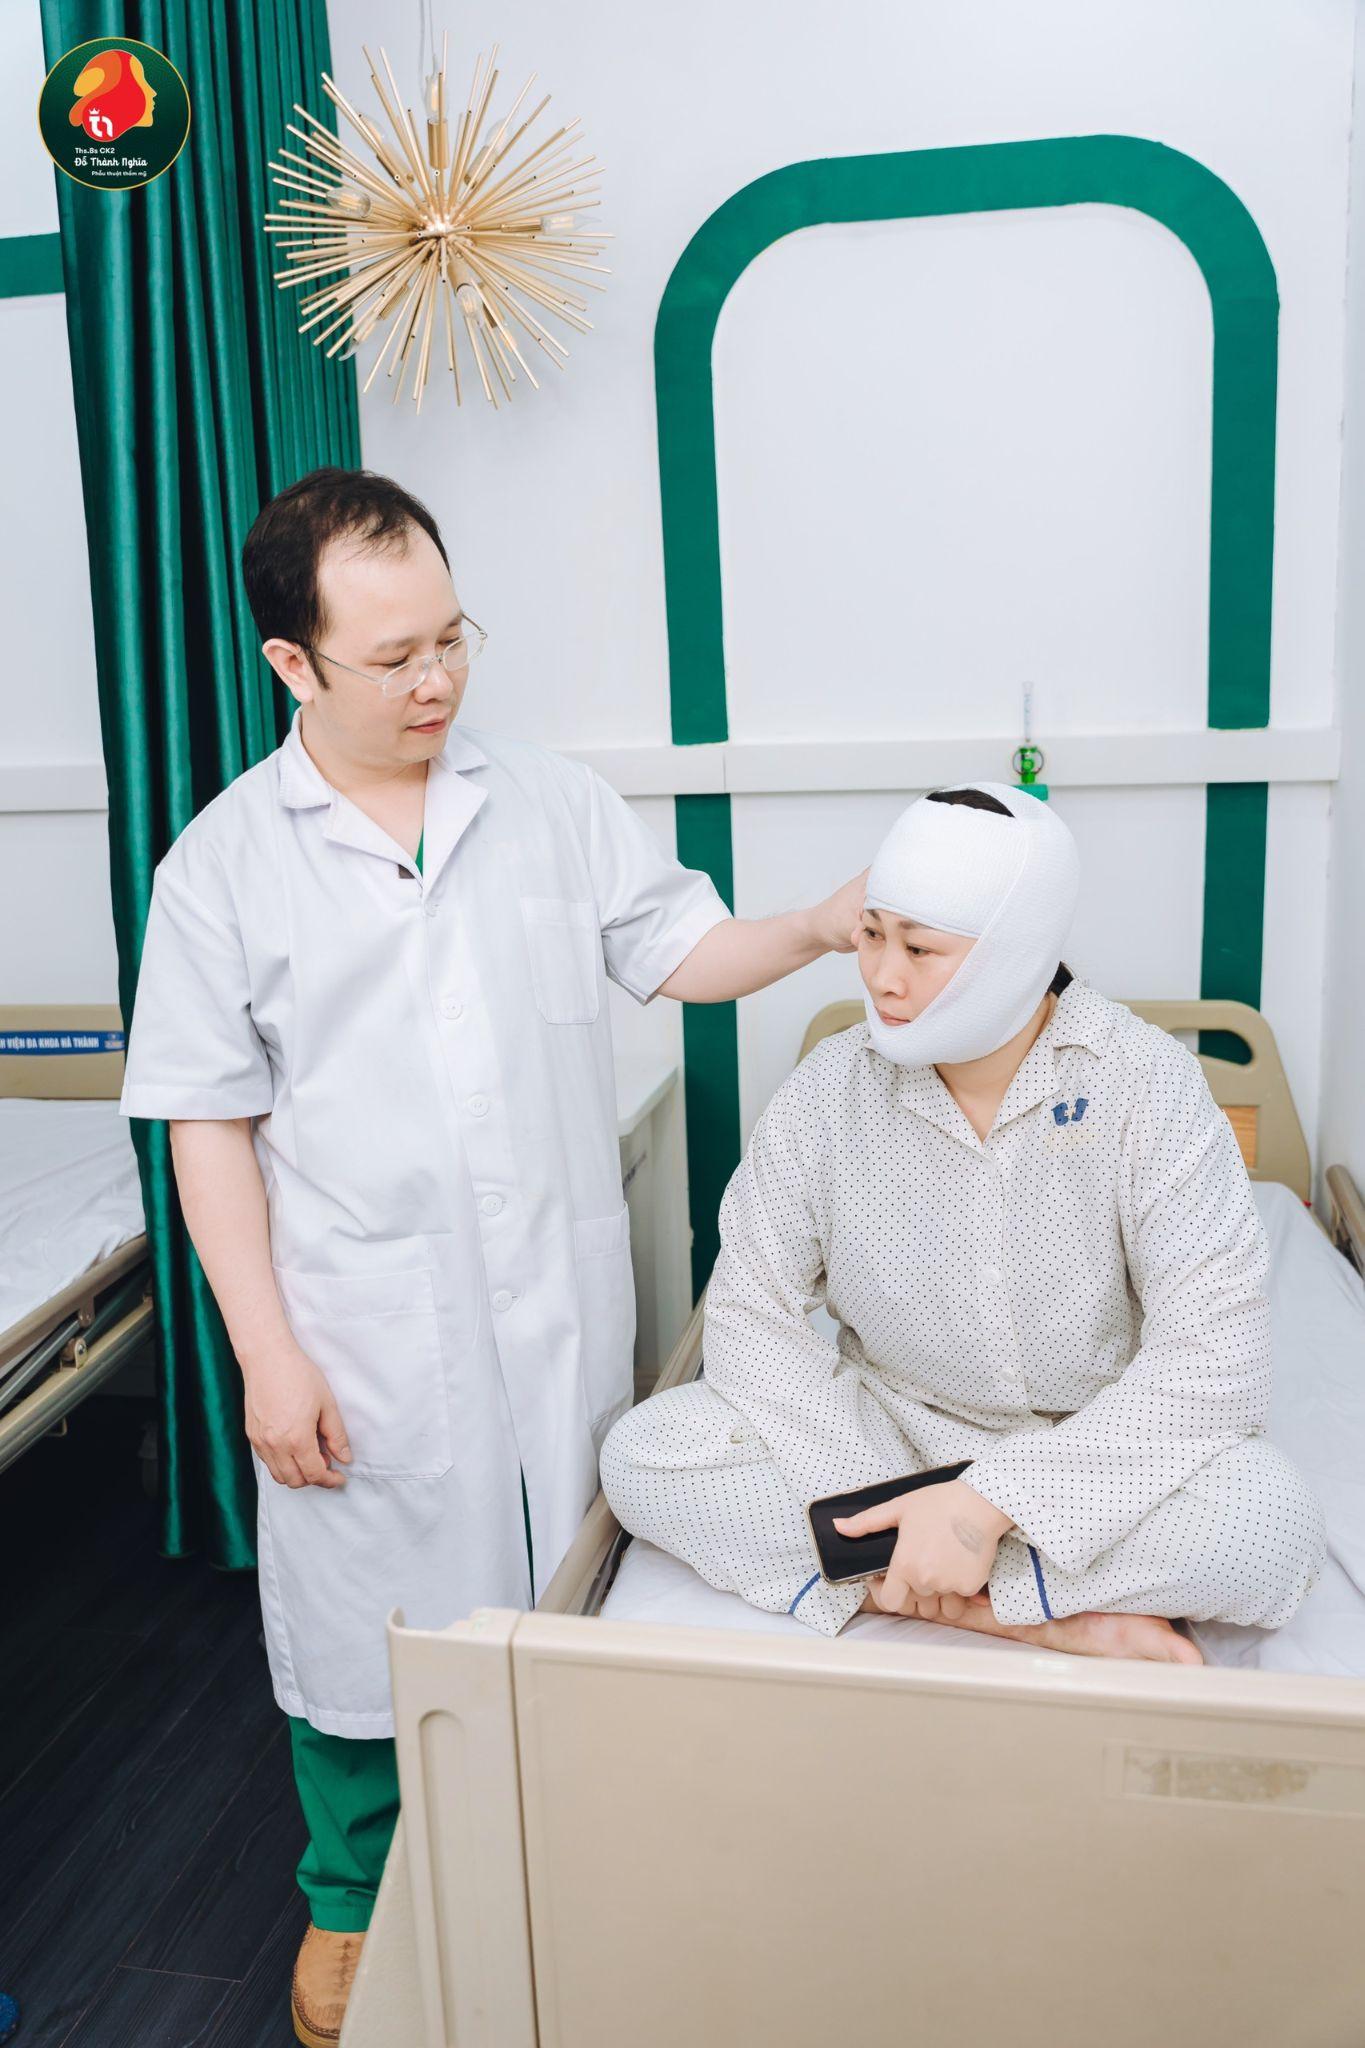 Bác sĩ Đỗ Thành Nghĩa thăm khám cho khách hàng căng da mặt dưới SMAS sau 2 ngày